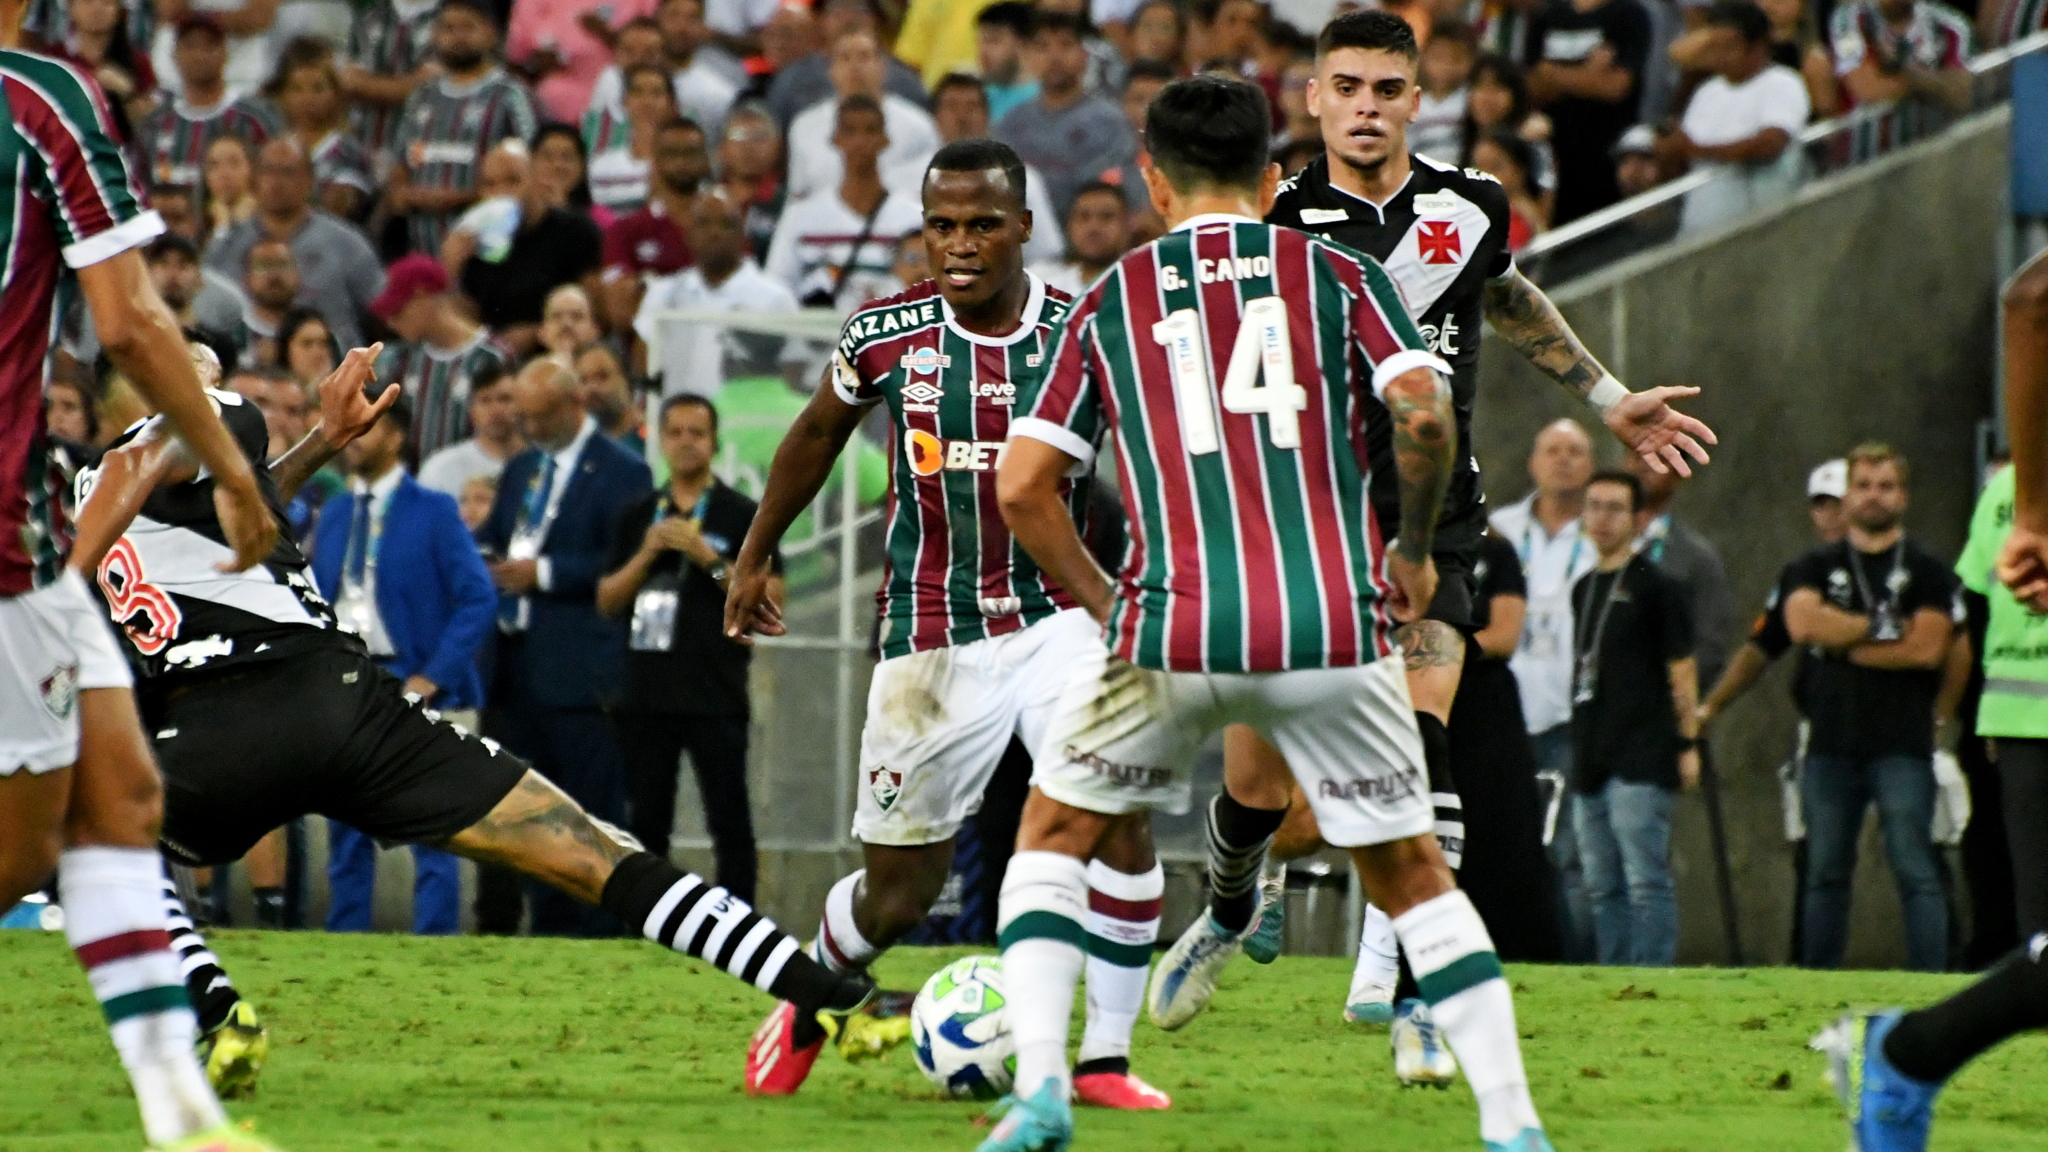 Como assistir Vasco x Bahia hoje AO VIVO pela 26ª rodada da Série A